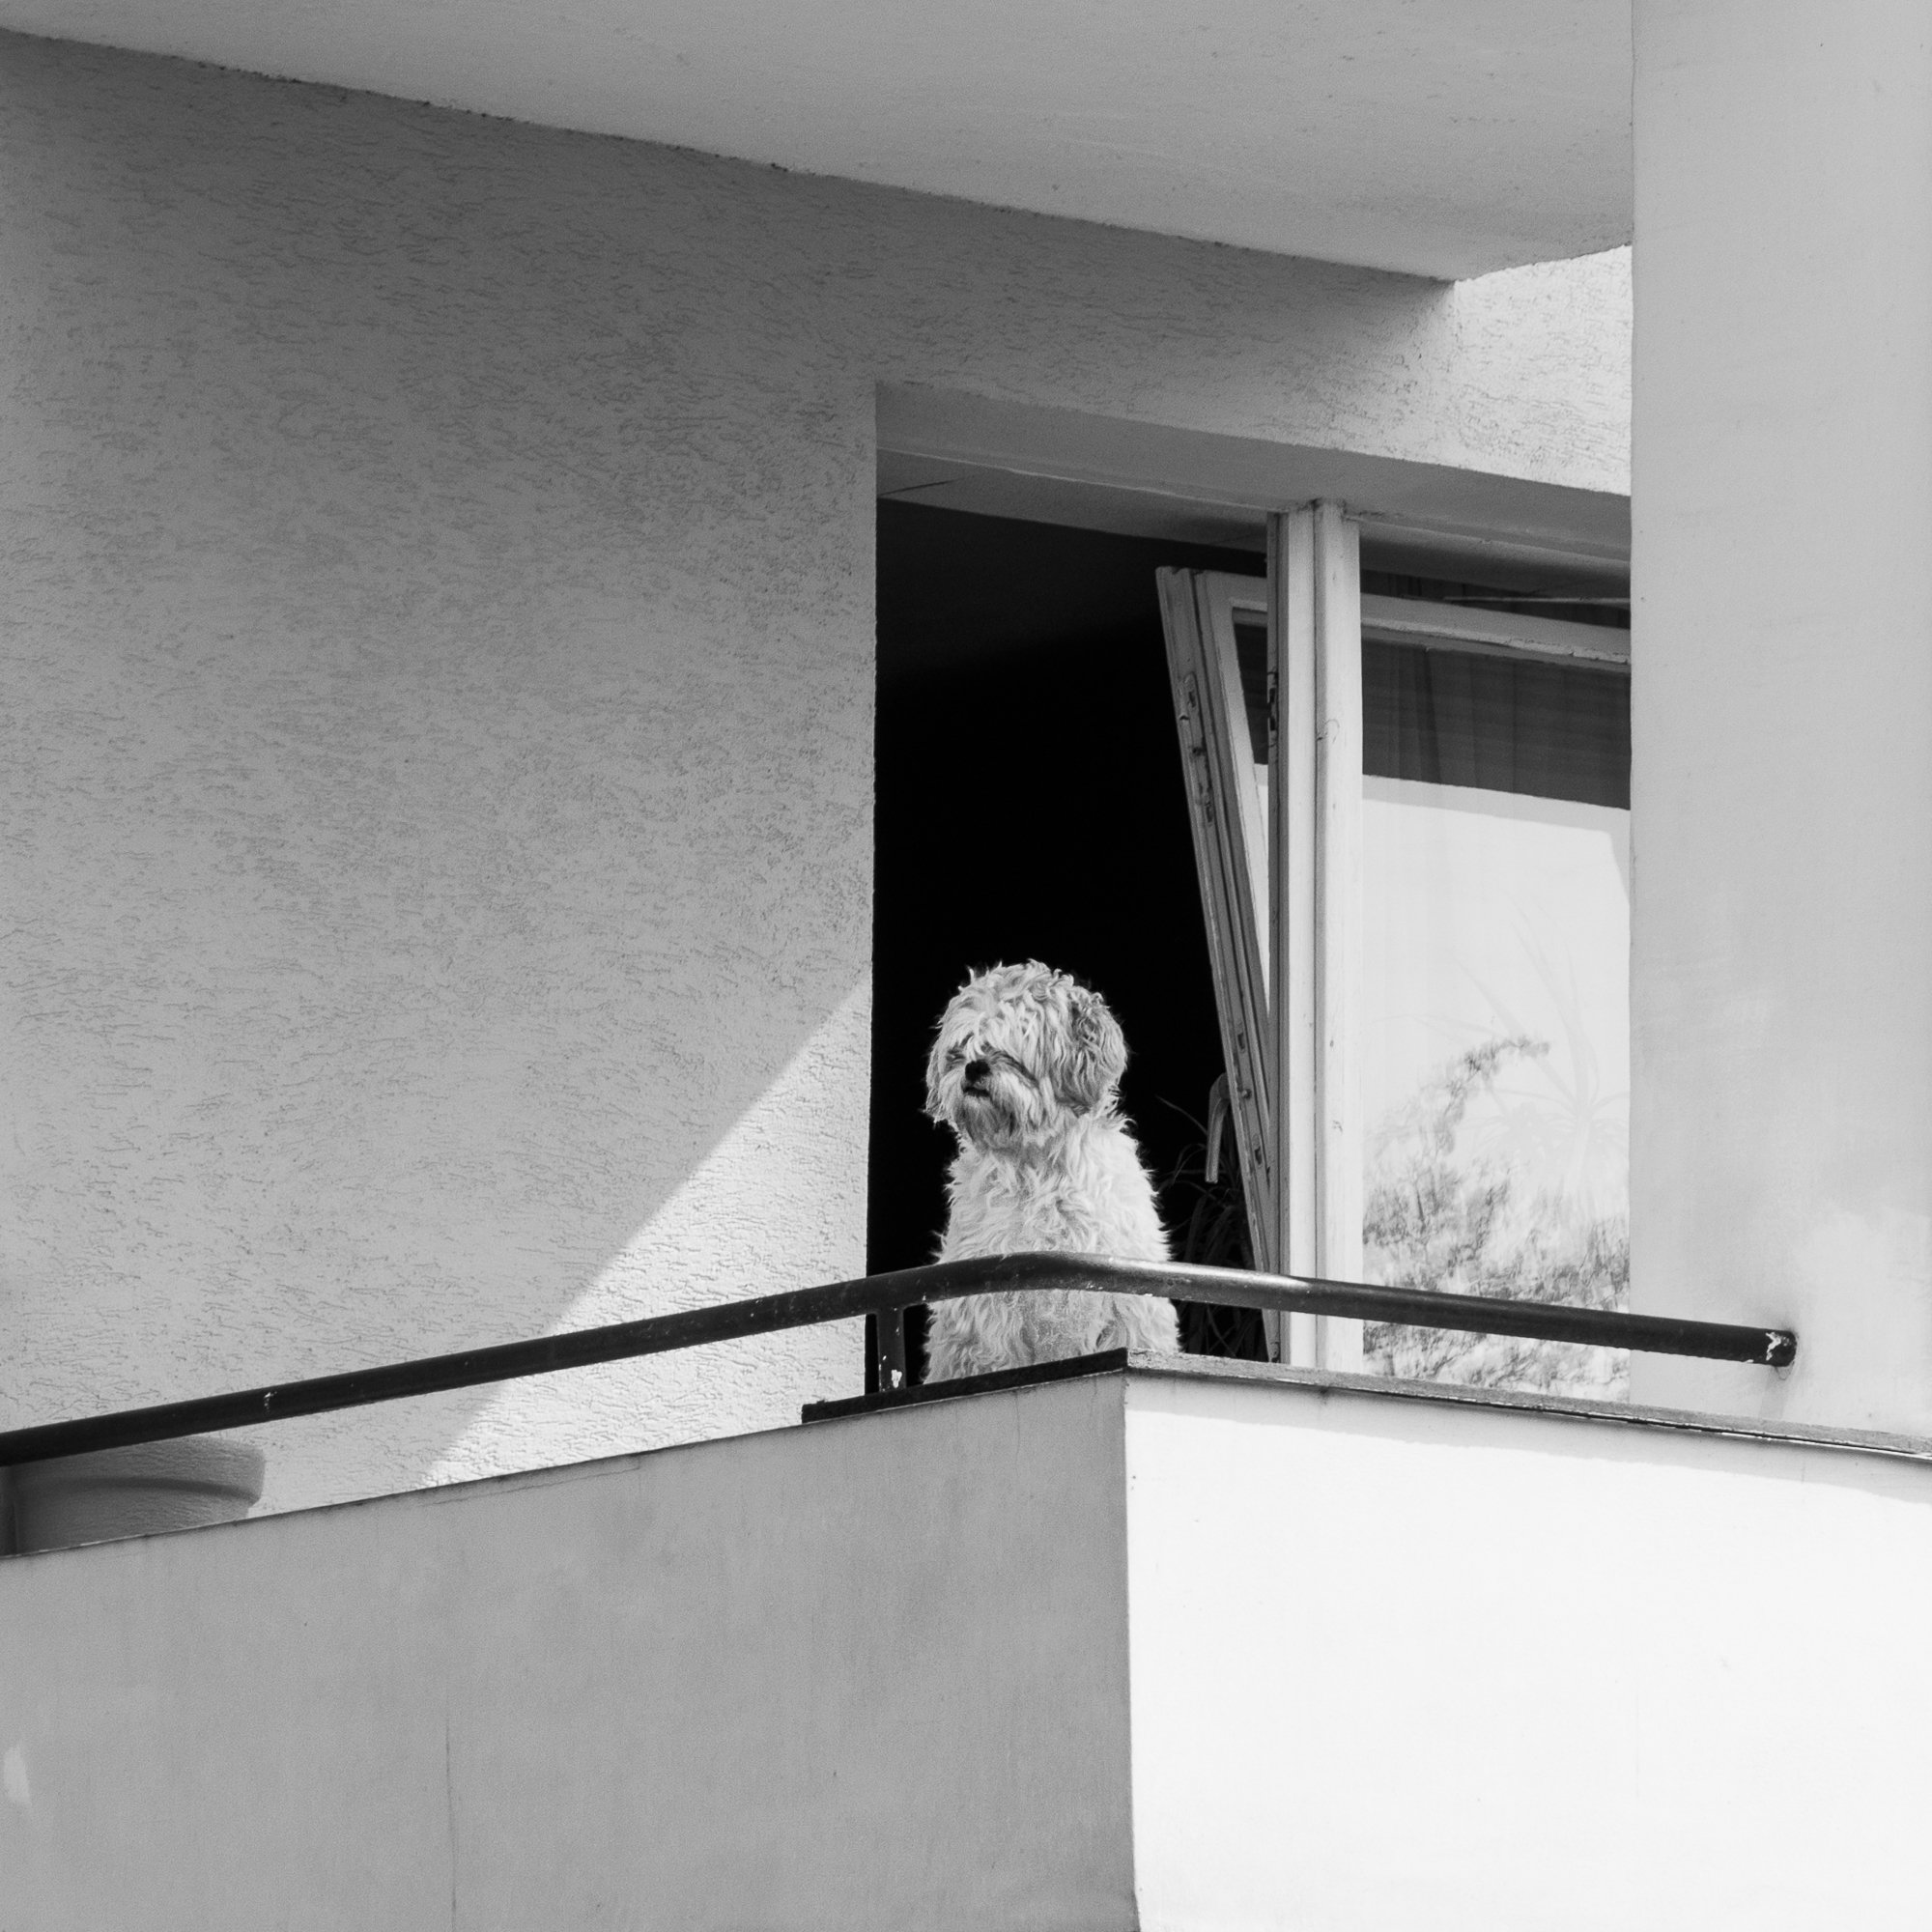 Adam Mazek Photography Warsaw (Warszawa) 2019. Post: "Banality." Minimalism. Square. The dog.